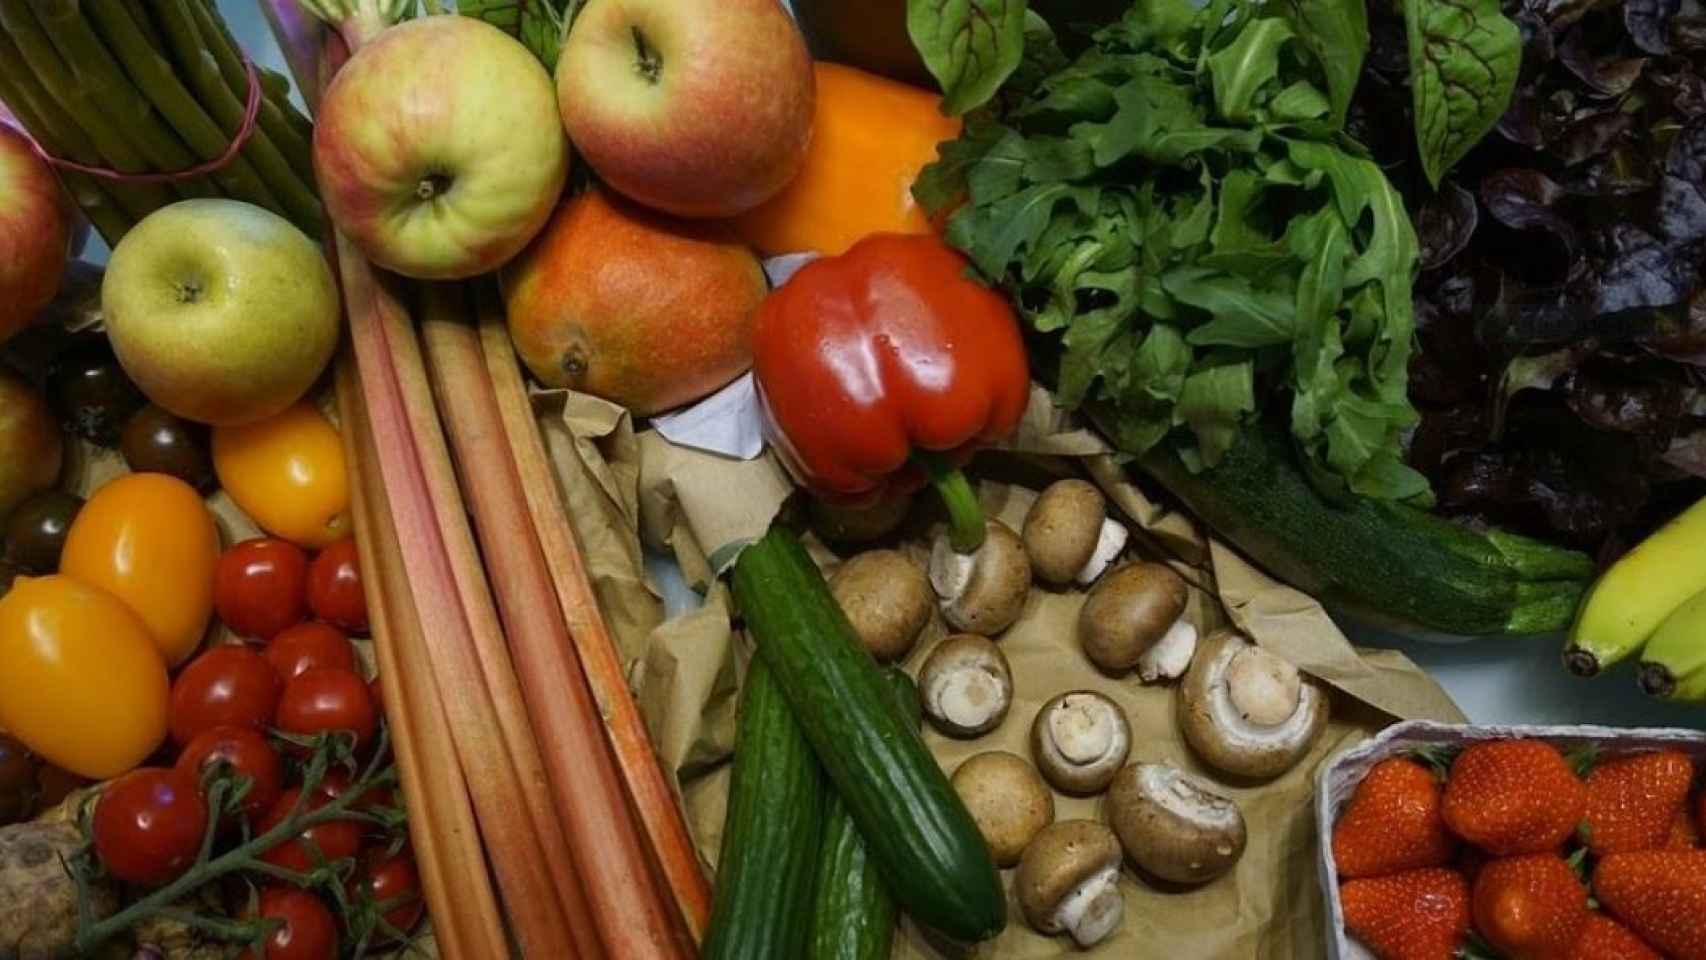 Una cesta de la compra con frutas, verduras y hortalizas.